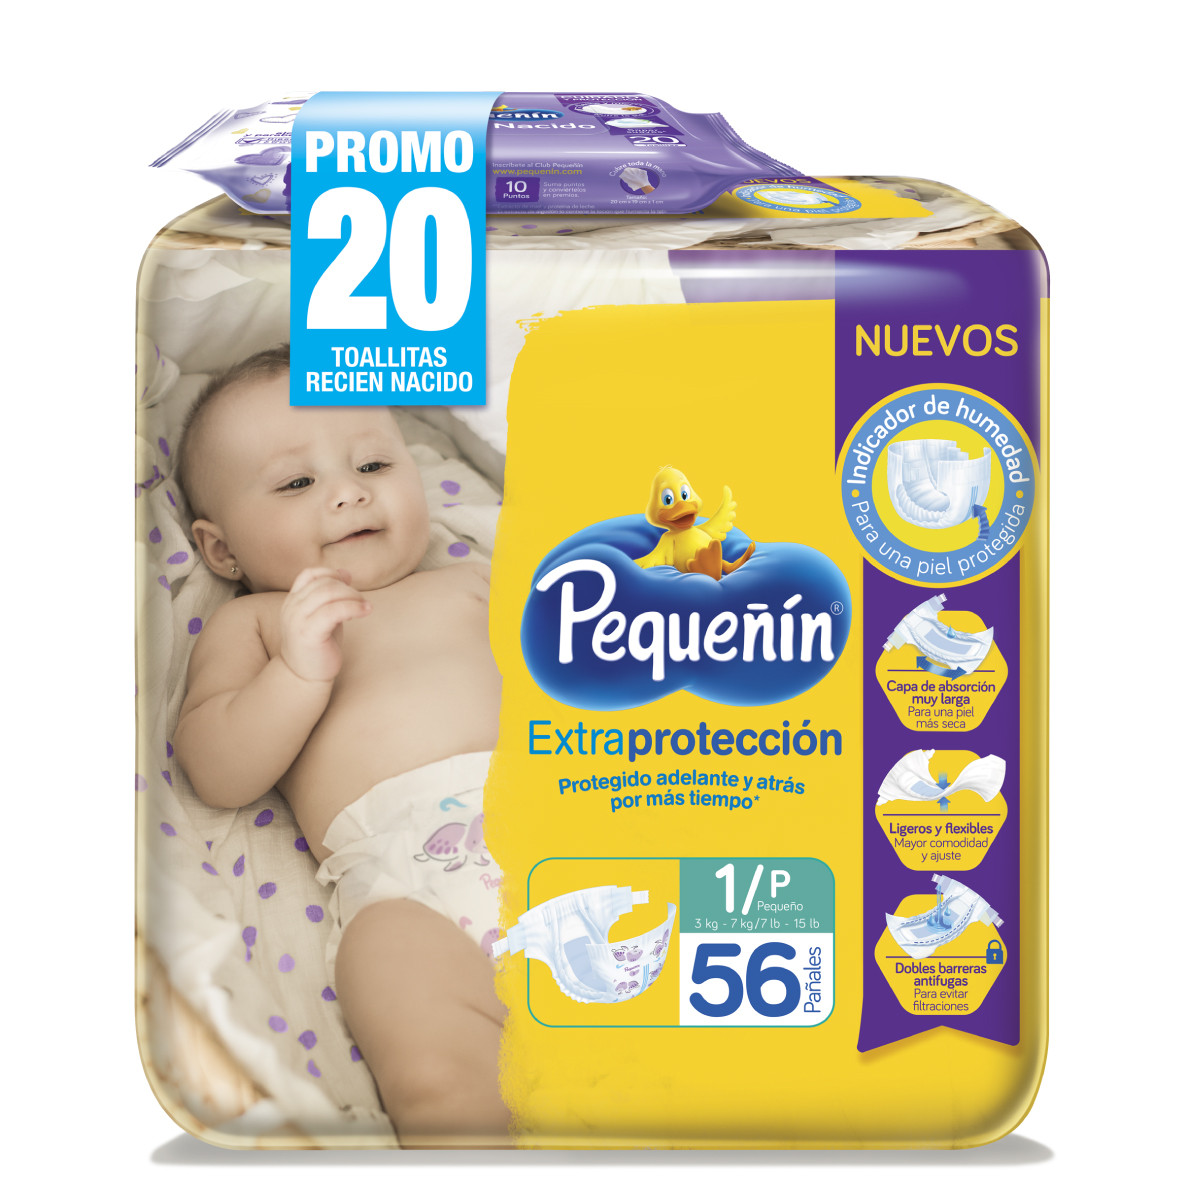 Imagen Inactiva Pañales Pequeñín Extraprotección Etapa 1 x 56 und + Toallitas Recién Nacido x 20 und